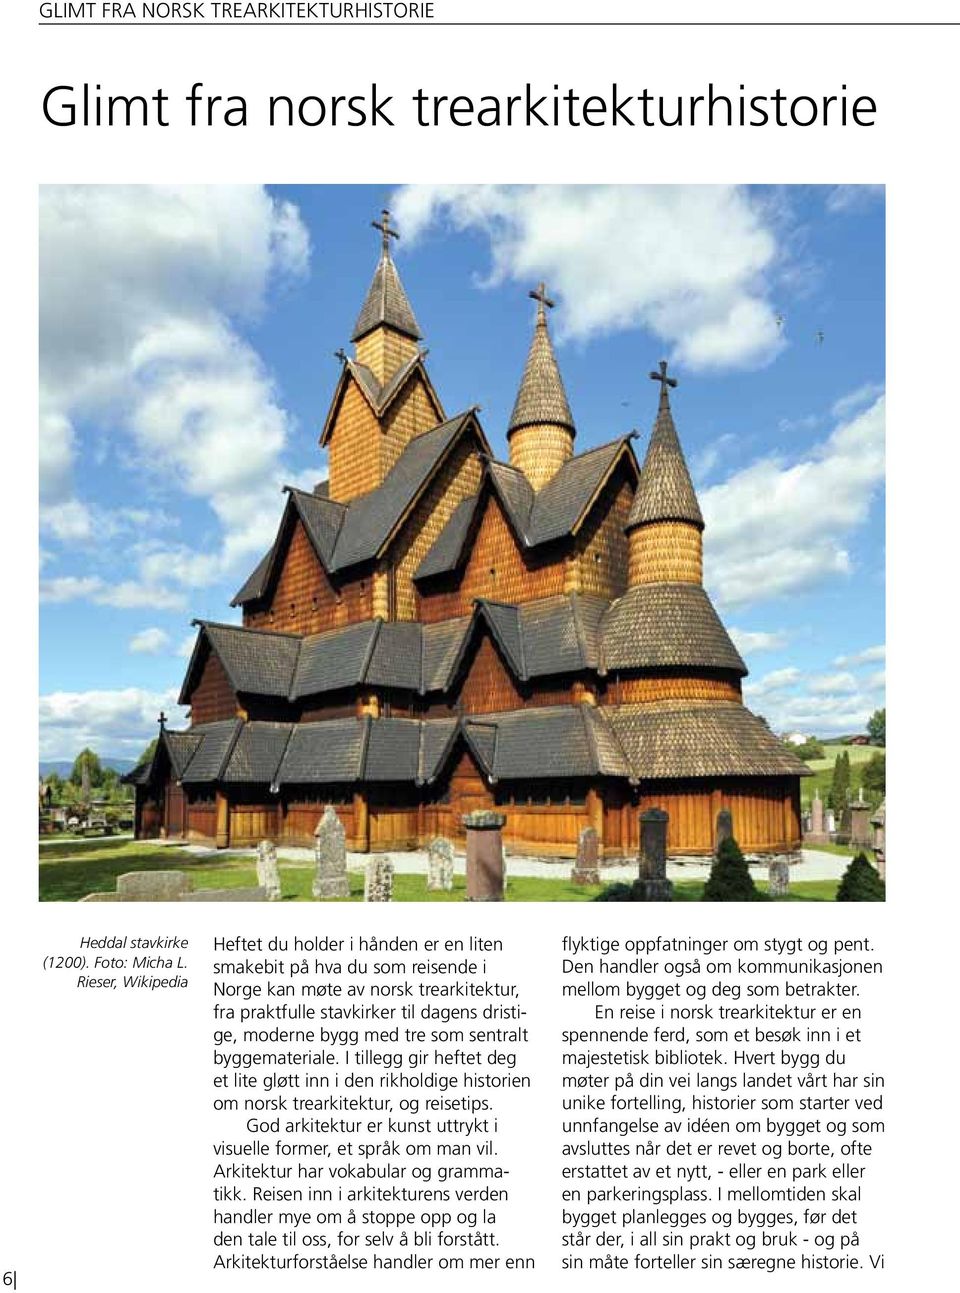 som sentralt byggemateriale. I tillegg gir heftet deg et lite gløtt inn i den rikholdige historien om norsk trearkitektur, og reisetips.